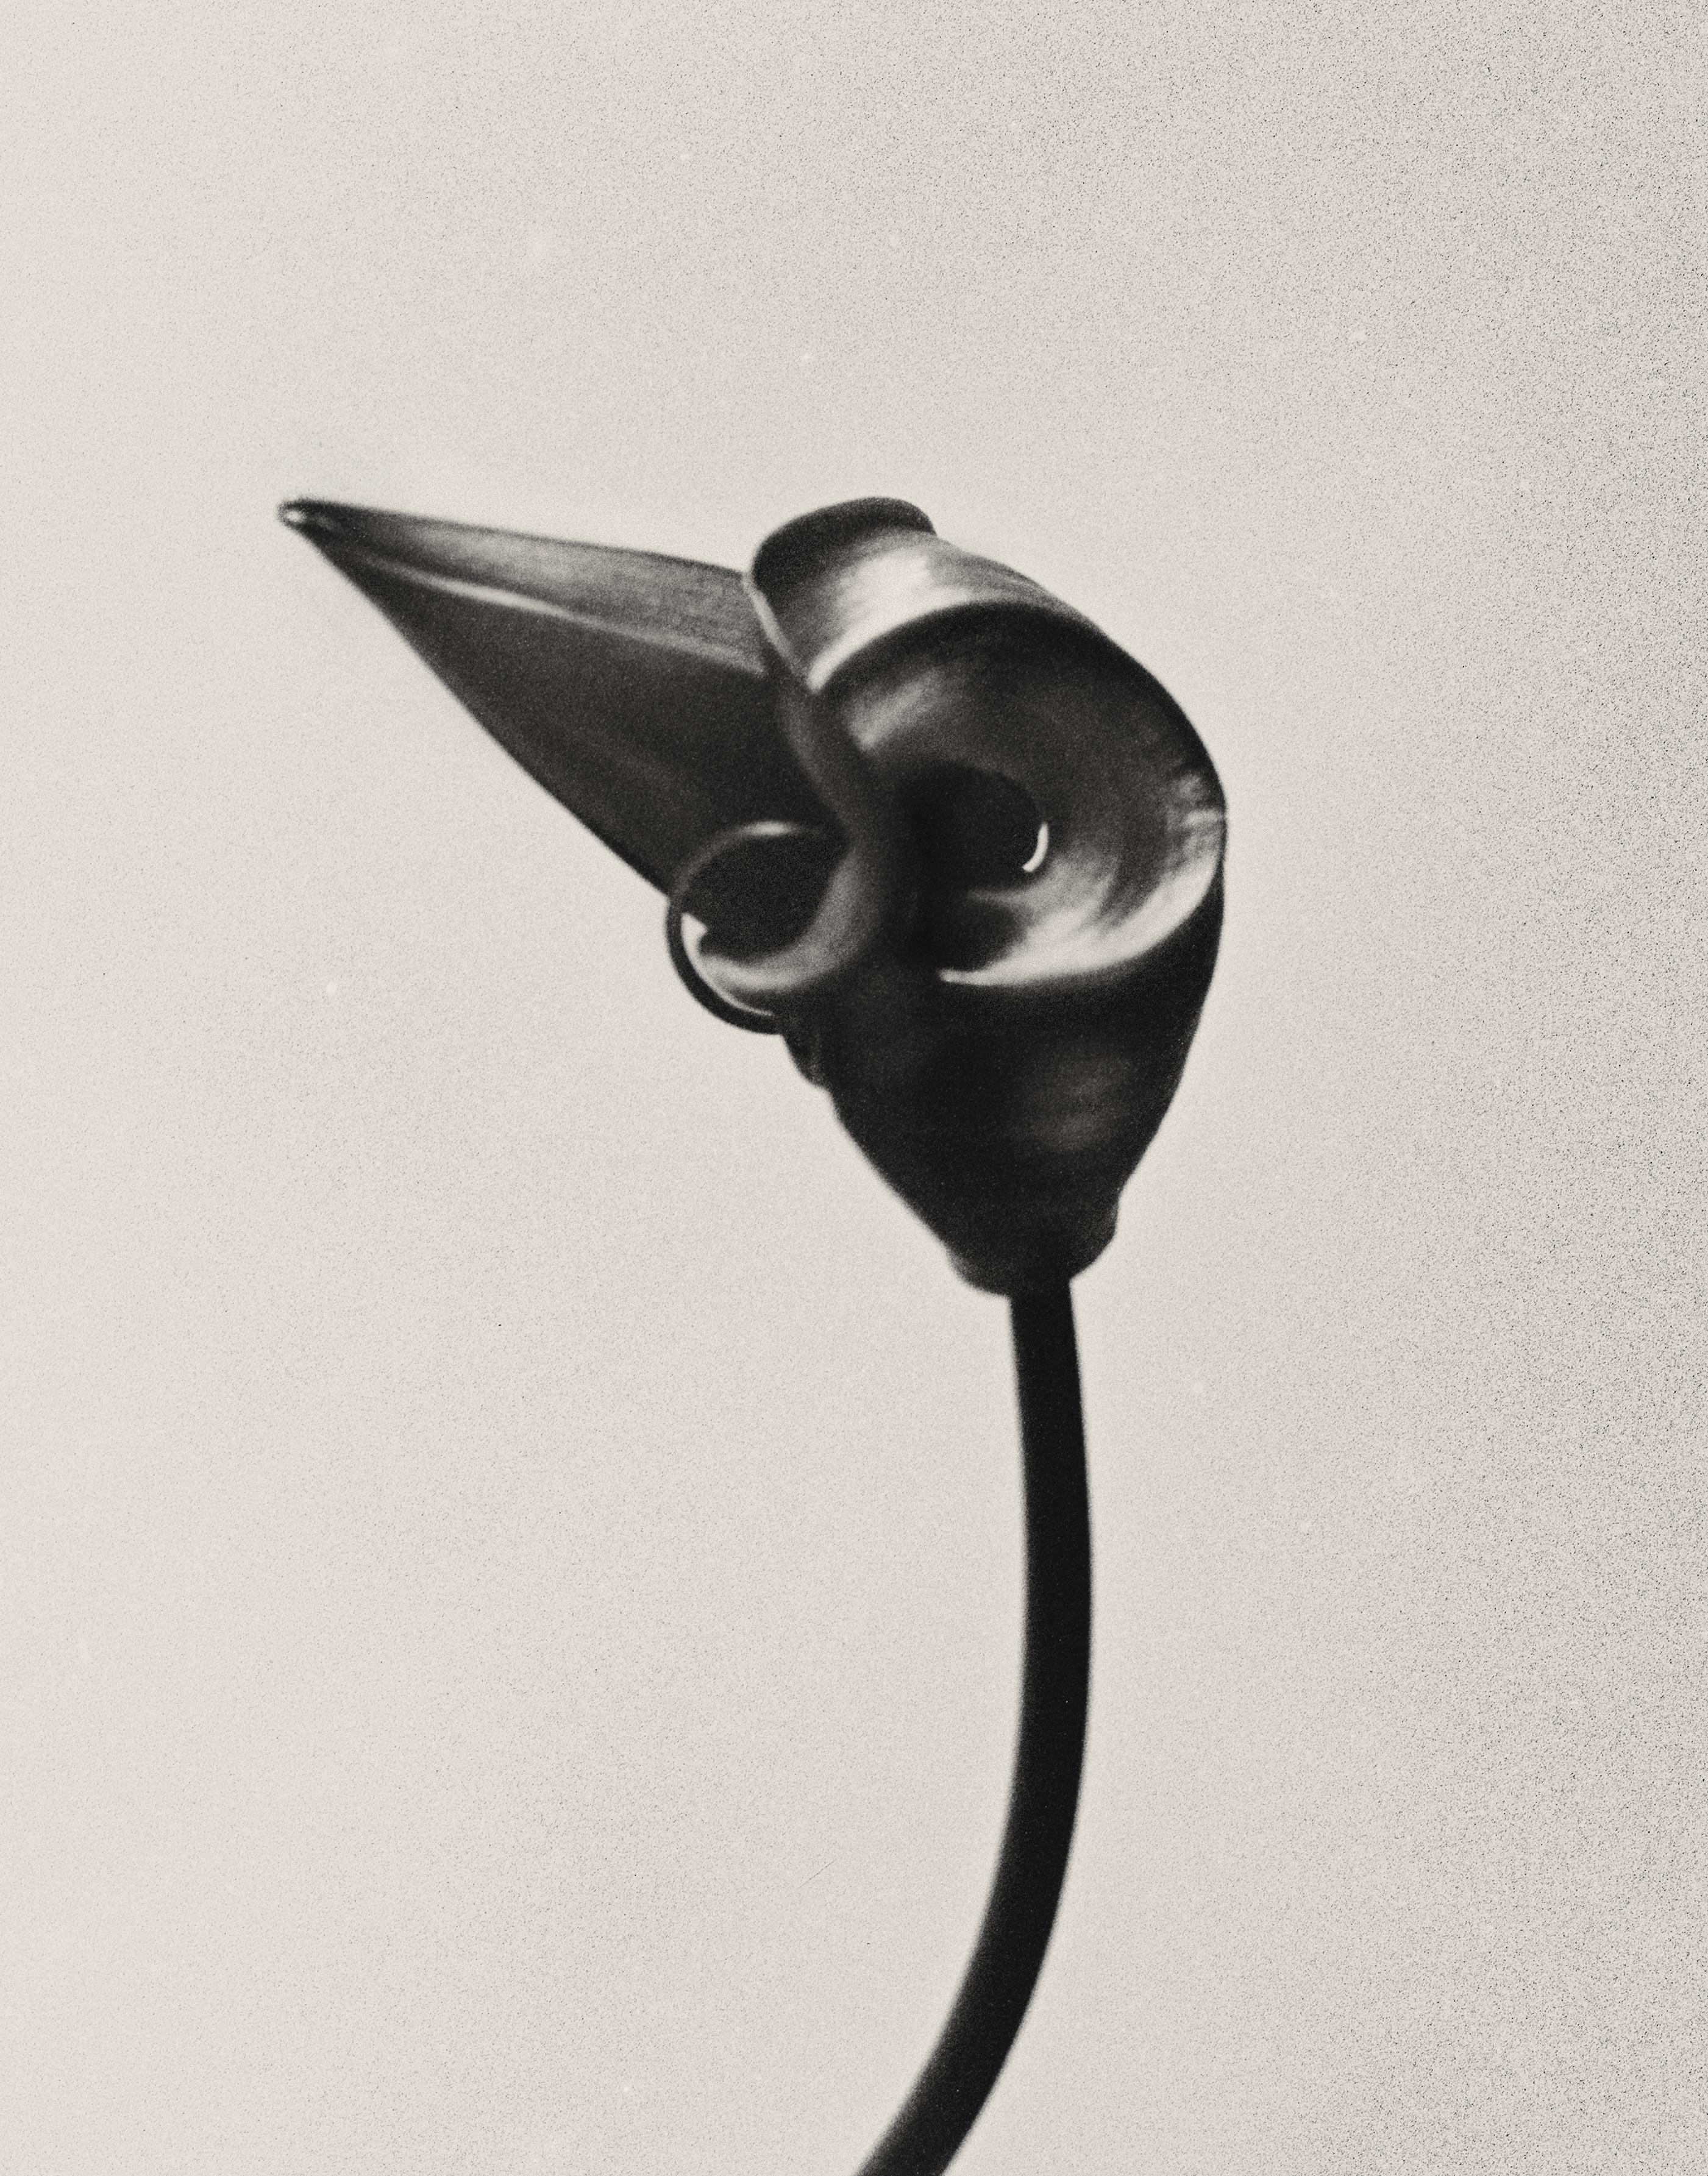 Ugne Pouwell Still-Life Photograph – Gloriosa Knospenknospen – Schwarz-Weiß-Blumenfotografie in limitierter Auflage von 20 Stück